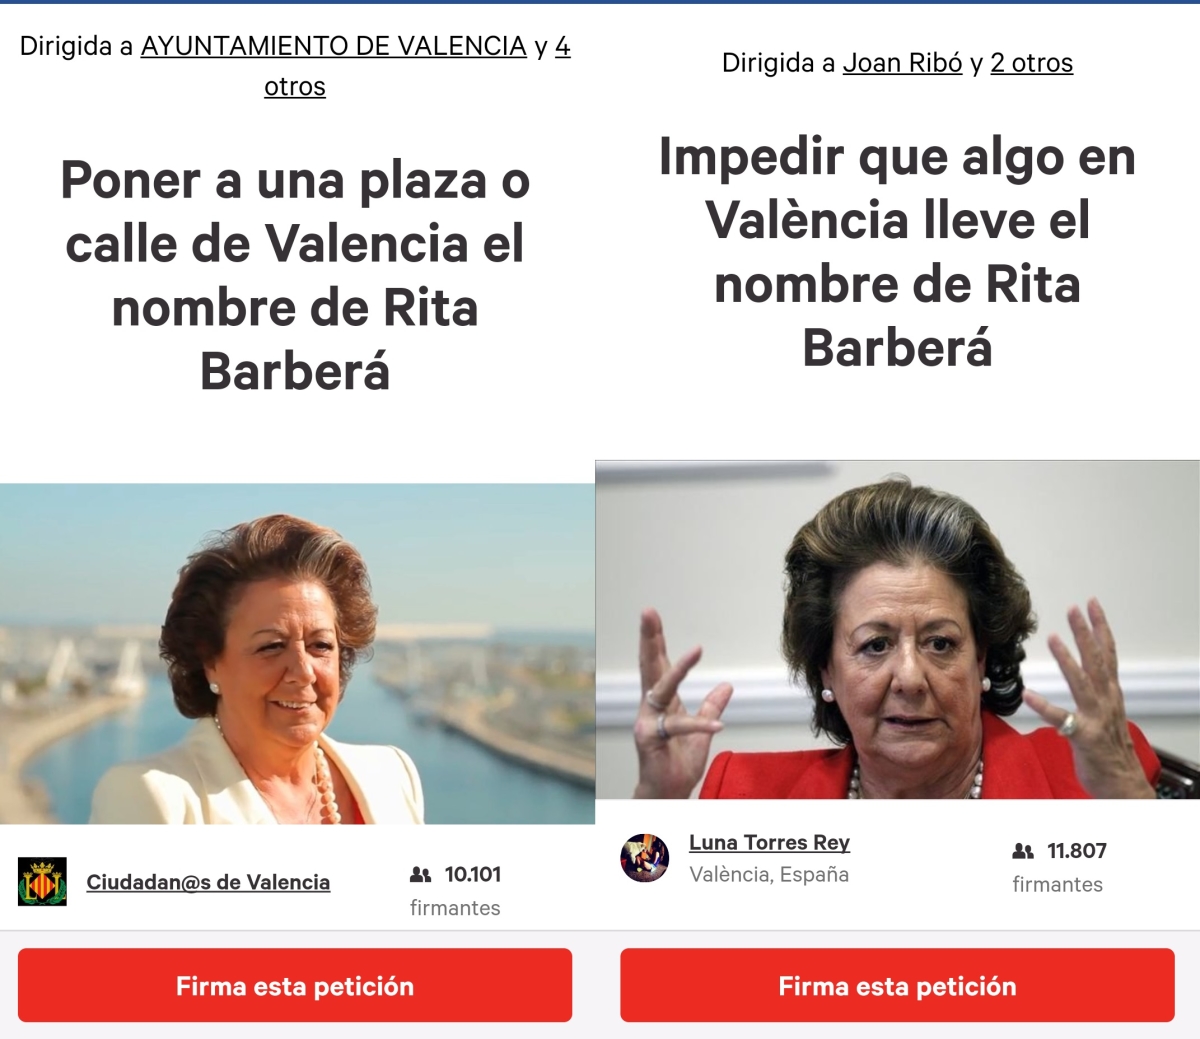 Dos peticions oposades sobre Rita Barberà en change.org